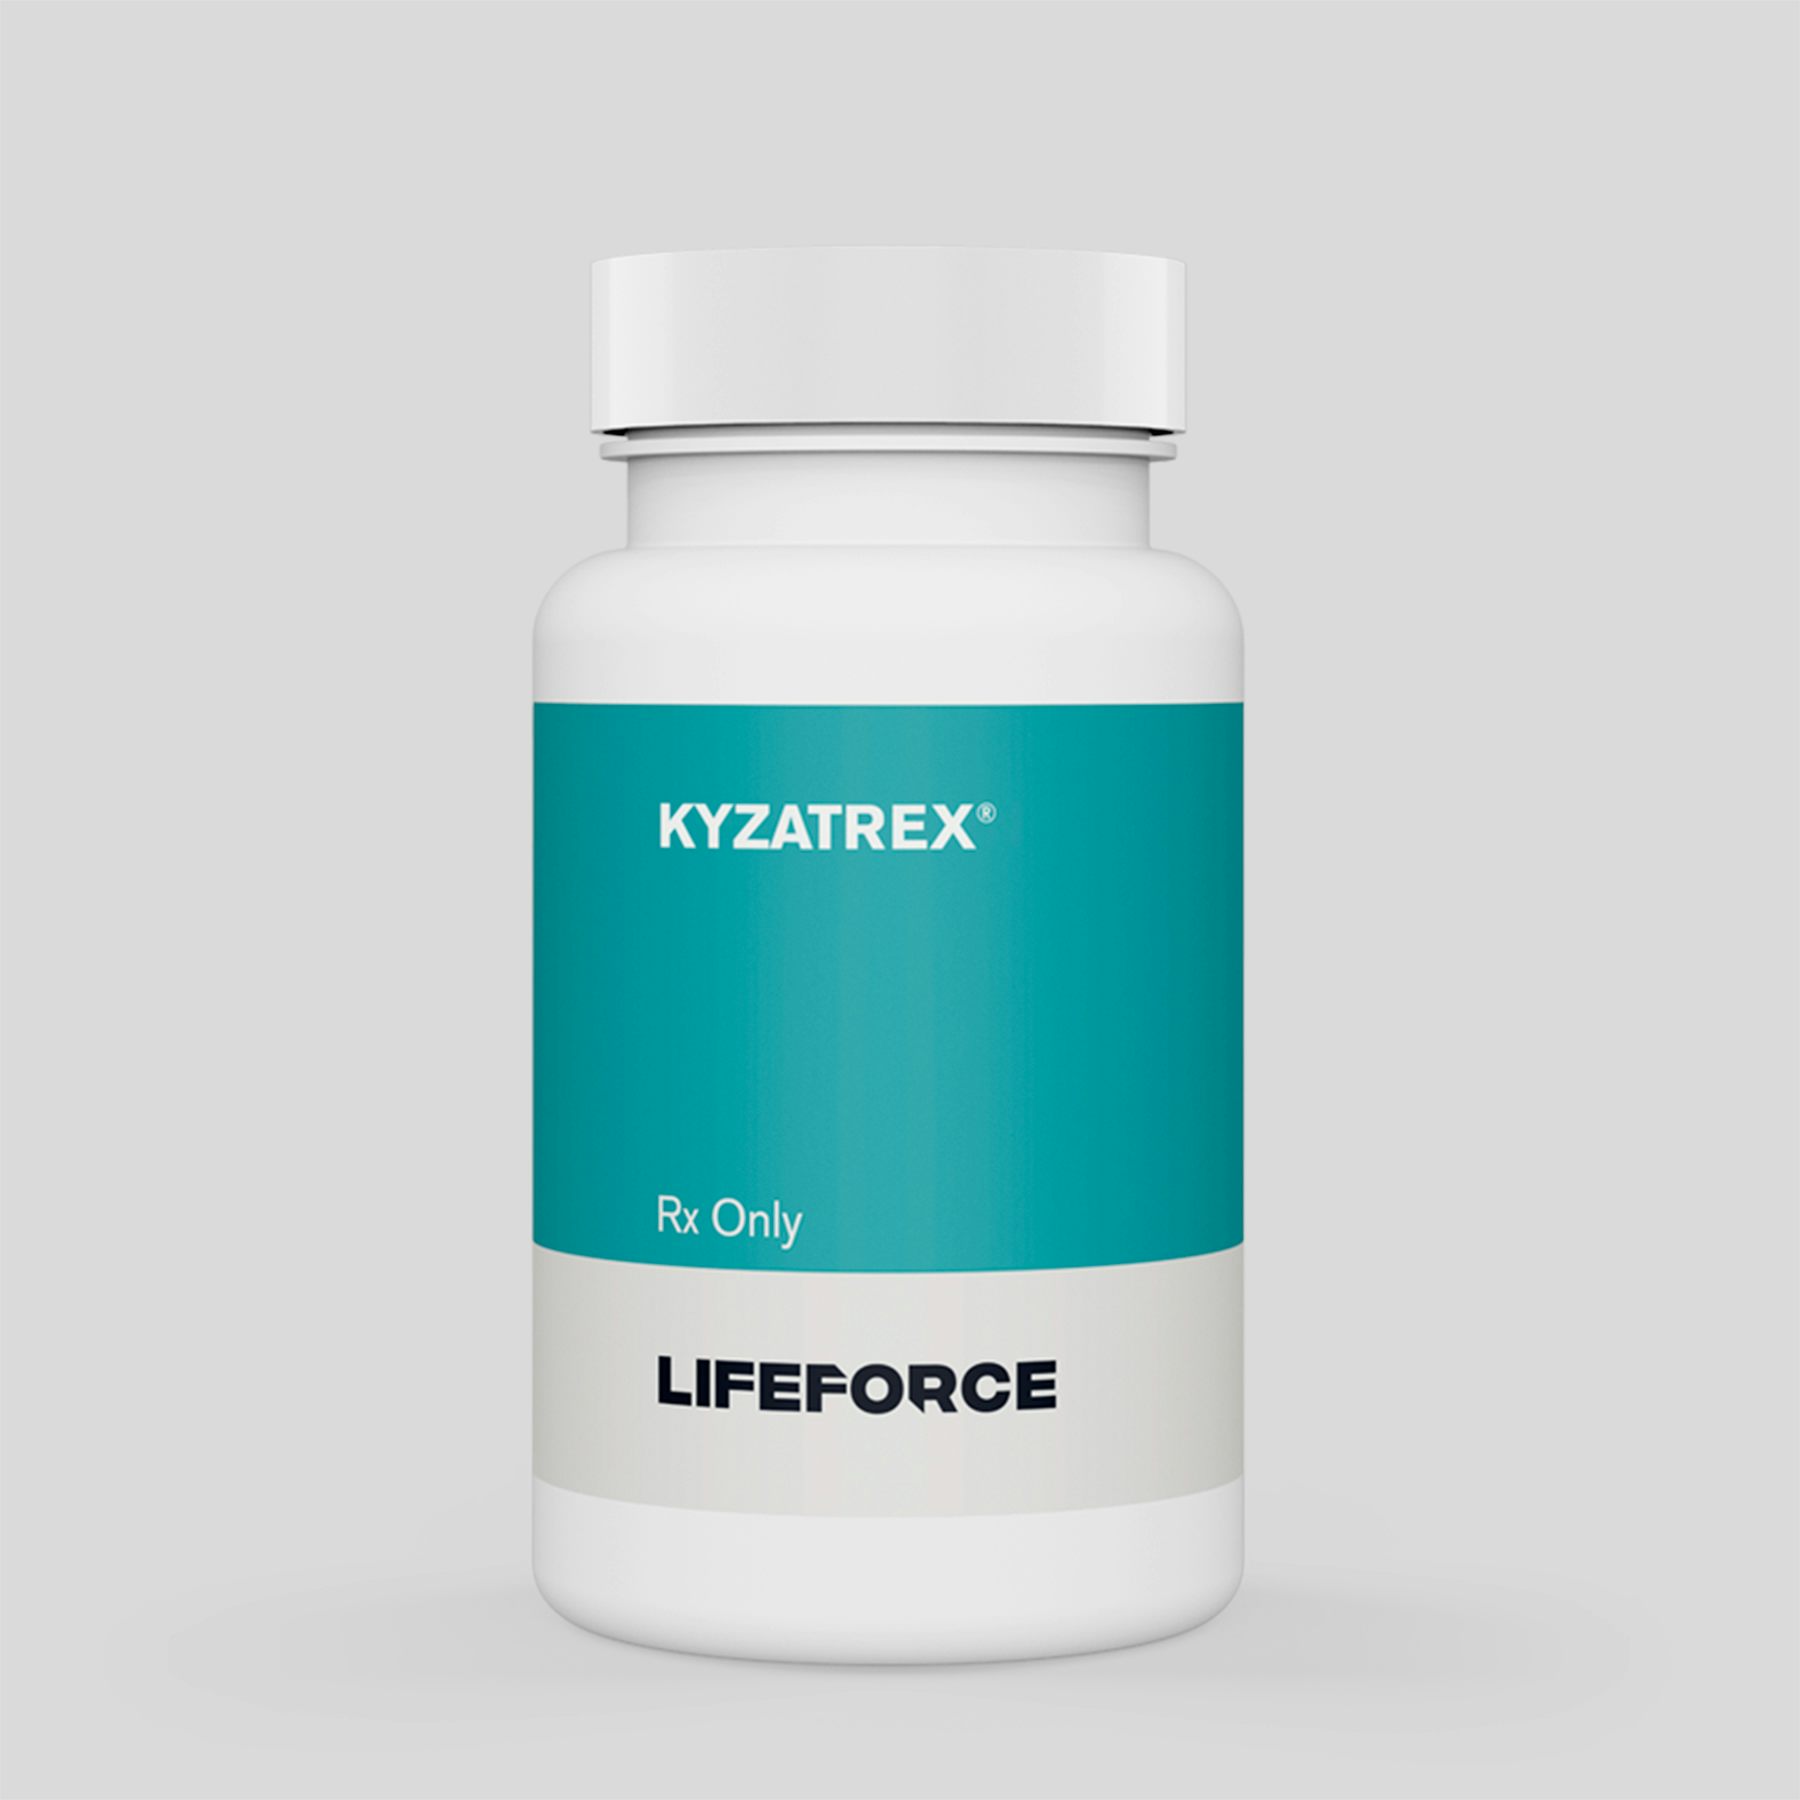 Kyzatrex